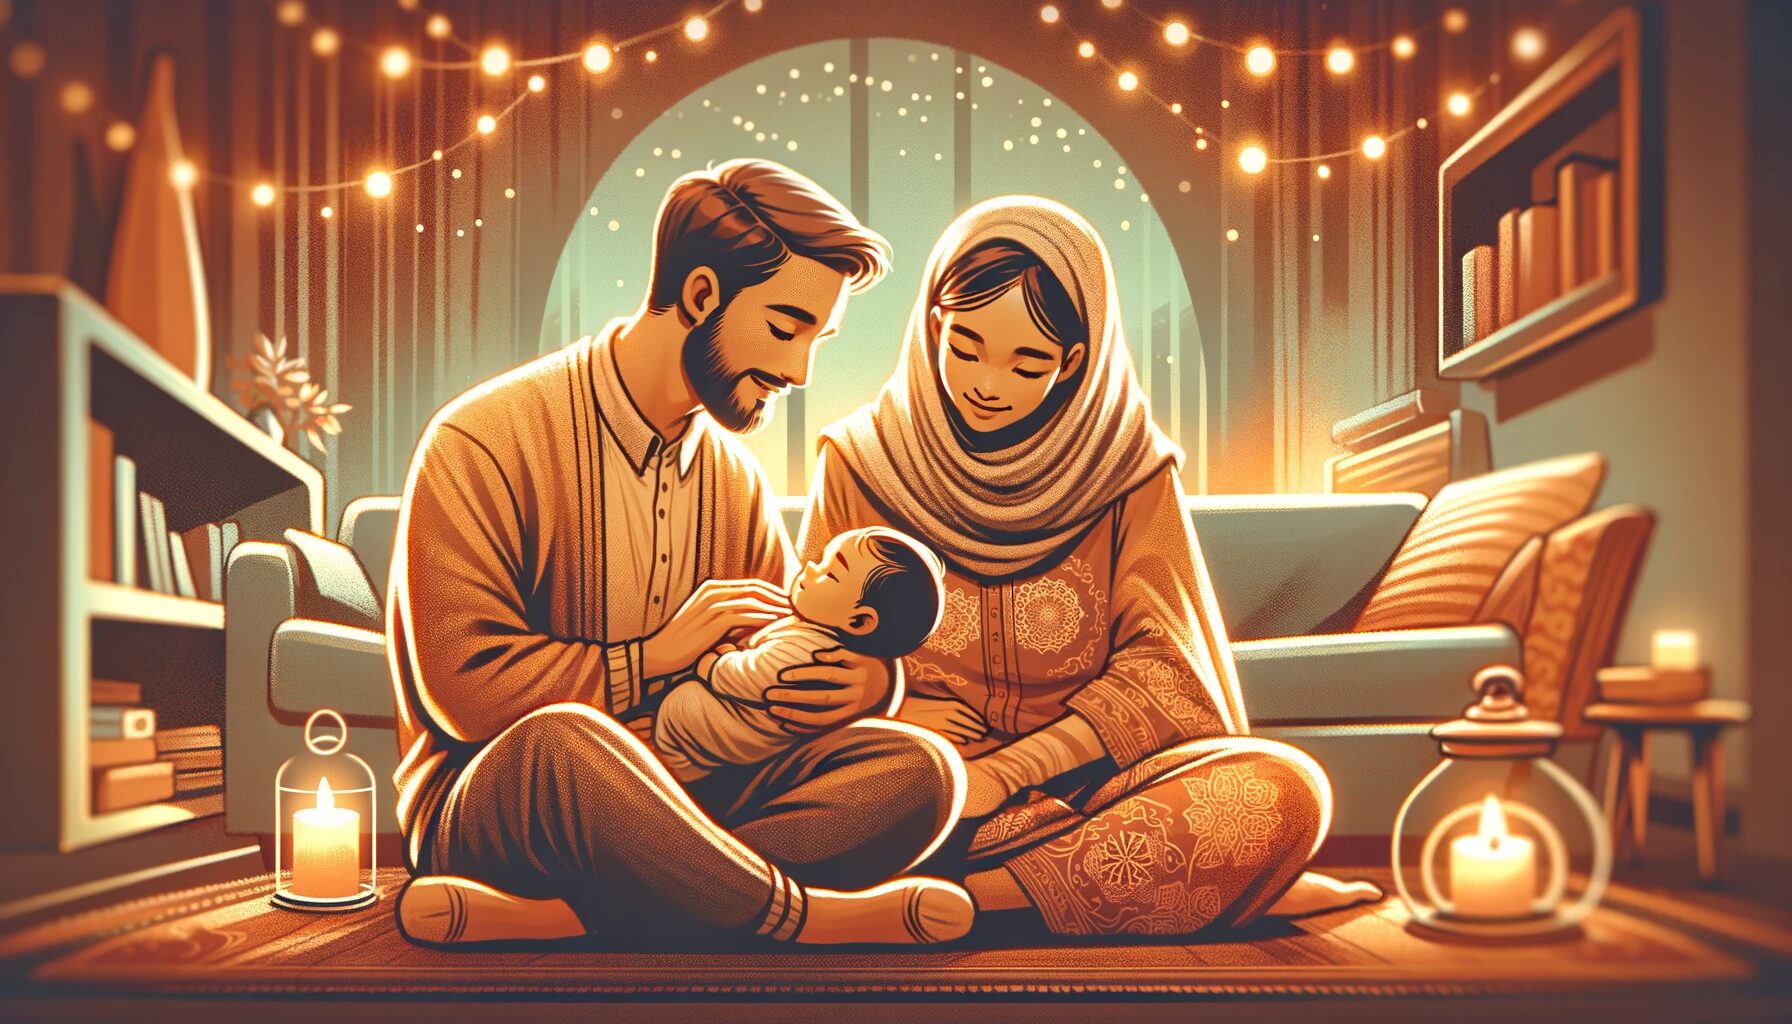 父親の愛、子供の未来への贈り物：母親である妻を愛することの深い影響